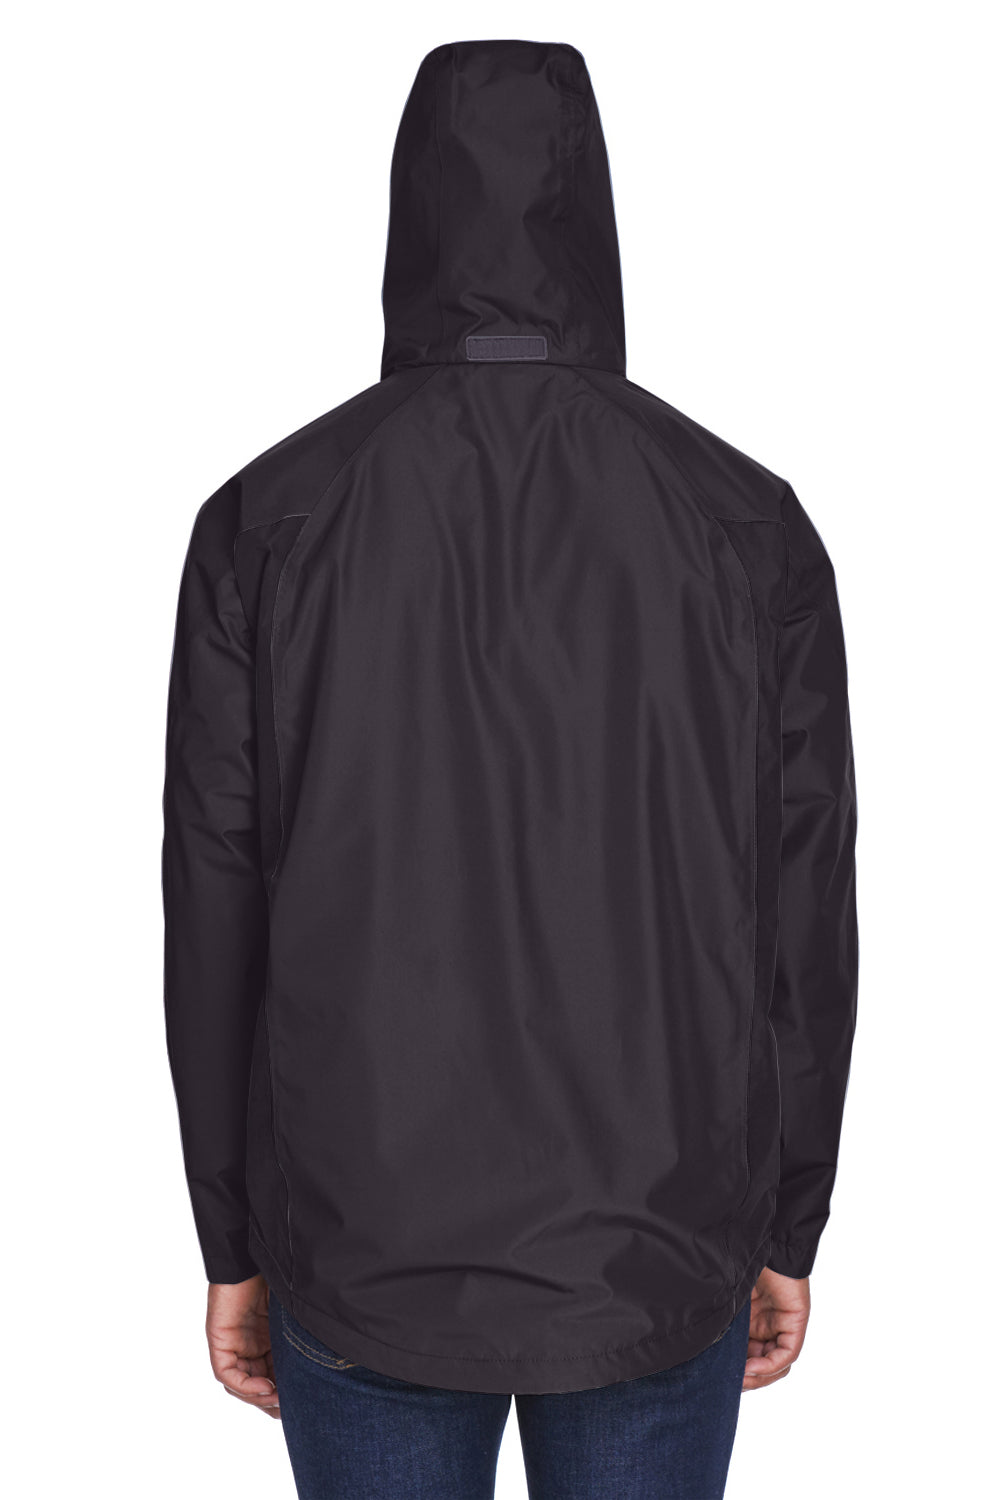 Team 365 TT86 Mens Dominator Waterproof Full Zip Hooded Jacket Black Back